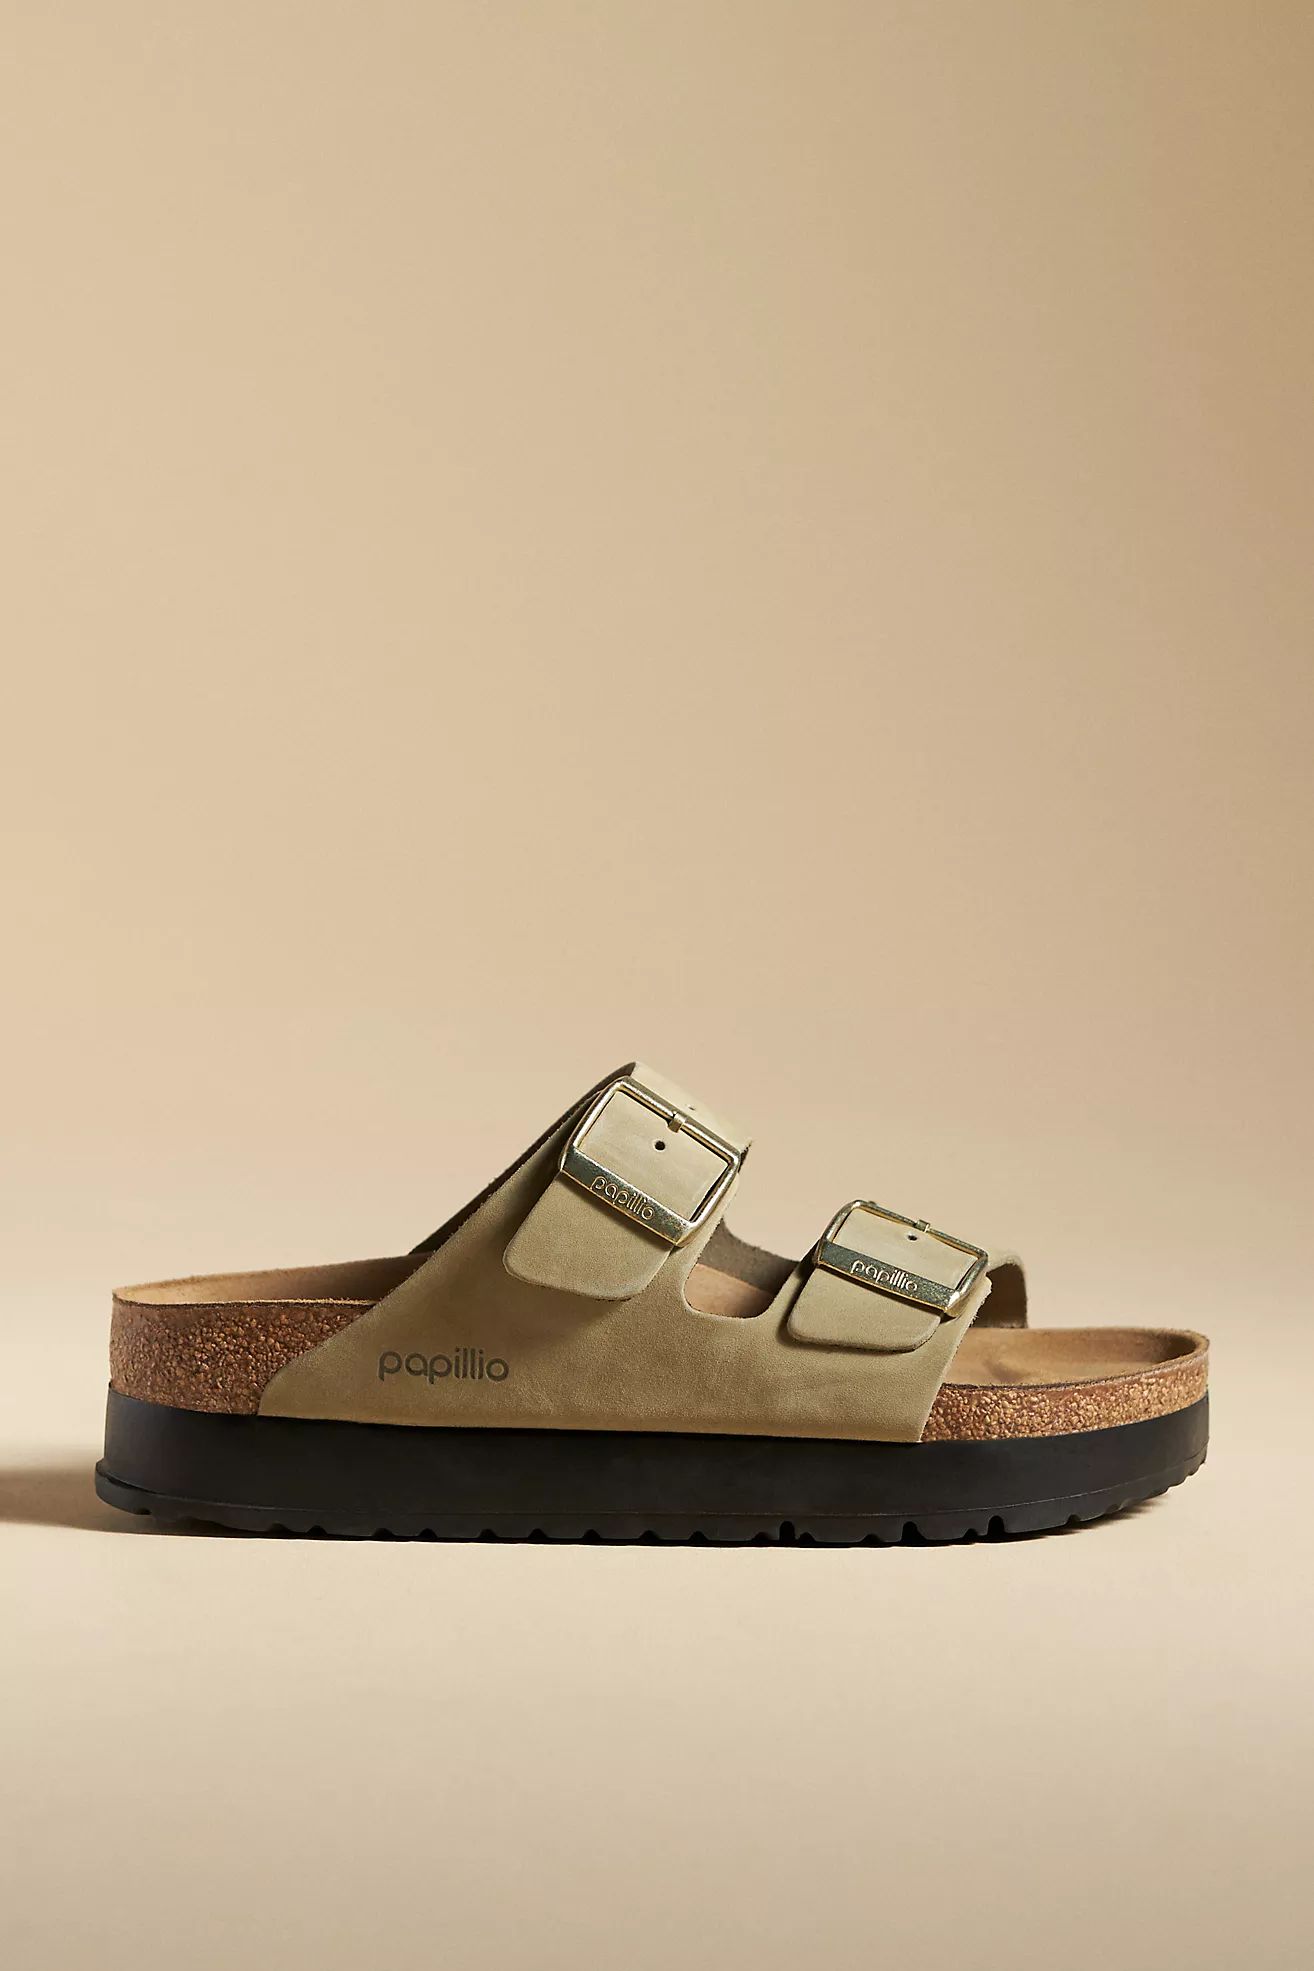 Papillo by Birkenstock Arizona Platform Sandals | Anthropologie (US)